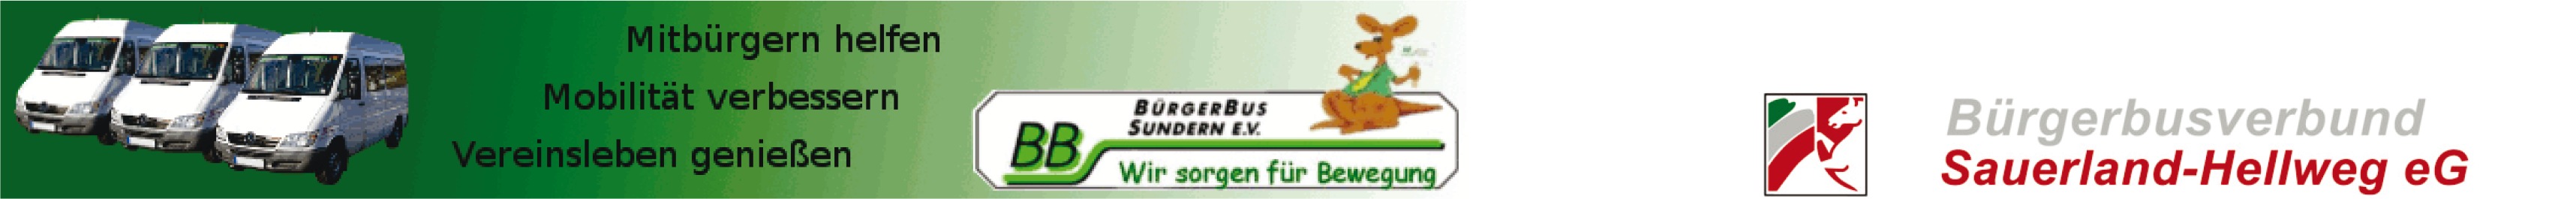 Bürgerbus Sundern e.V. 